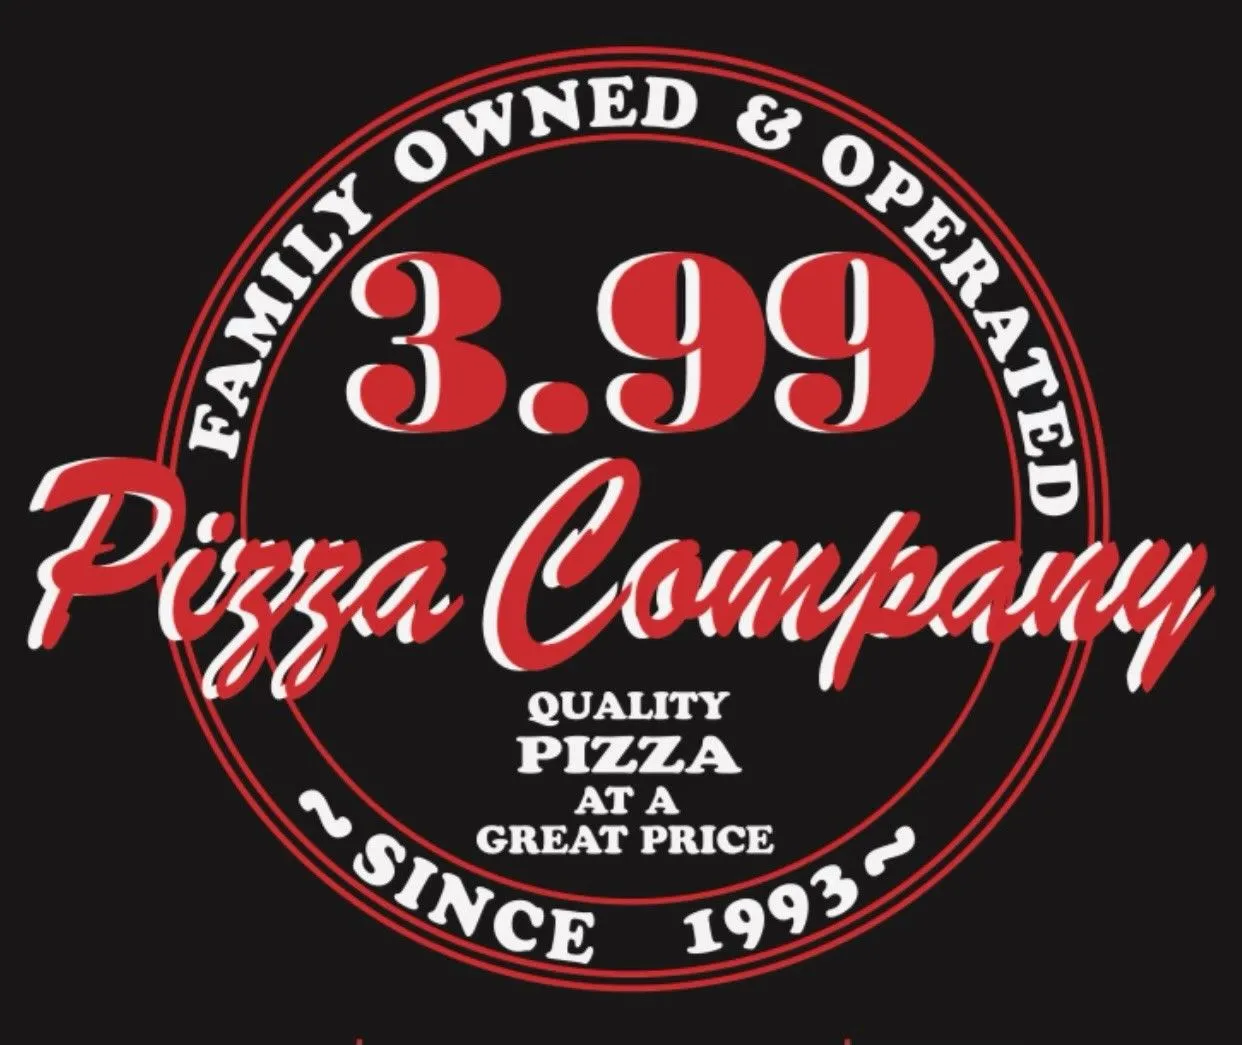 3.99 Pizza Company